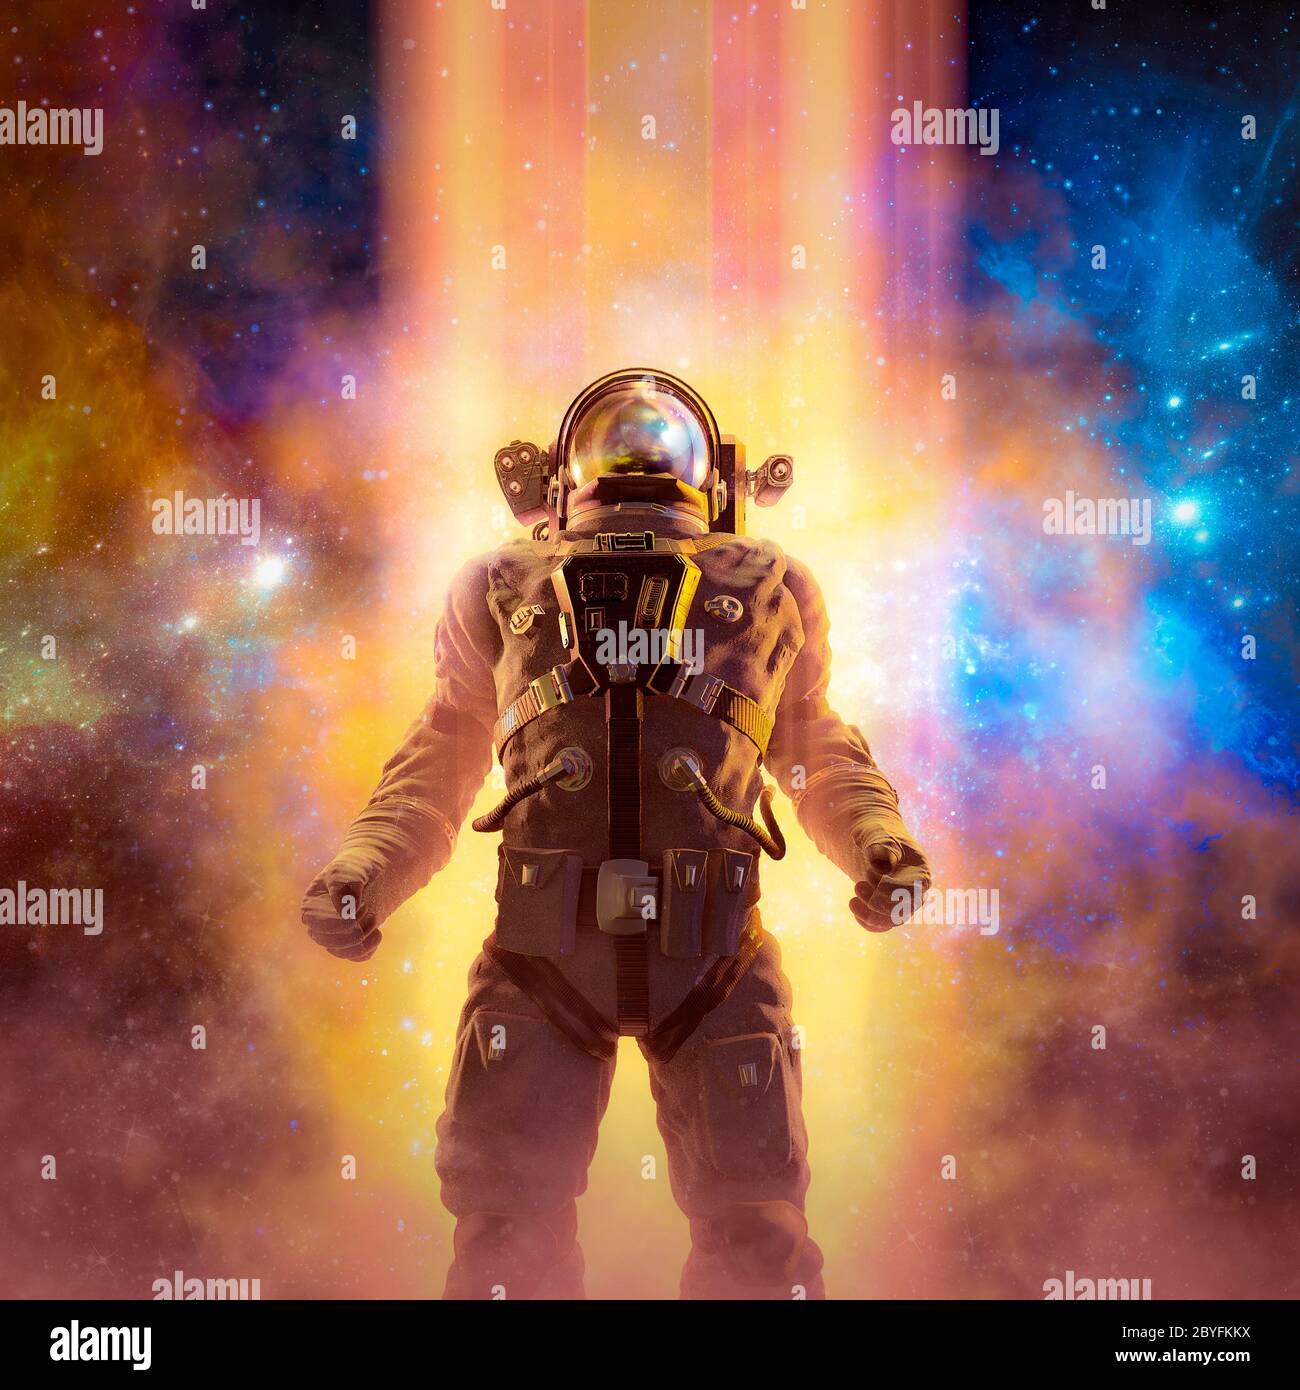 Viaggia verso le stelle / illustrazione 3D della scena fantascientifica con astronauta eroico che si stagliano contro i raggi di luce nello spazio Foto Stock